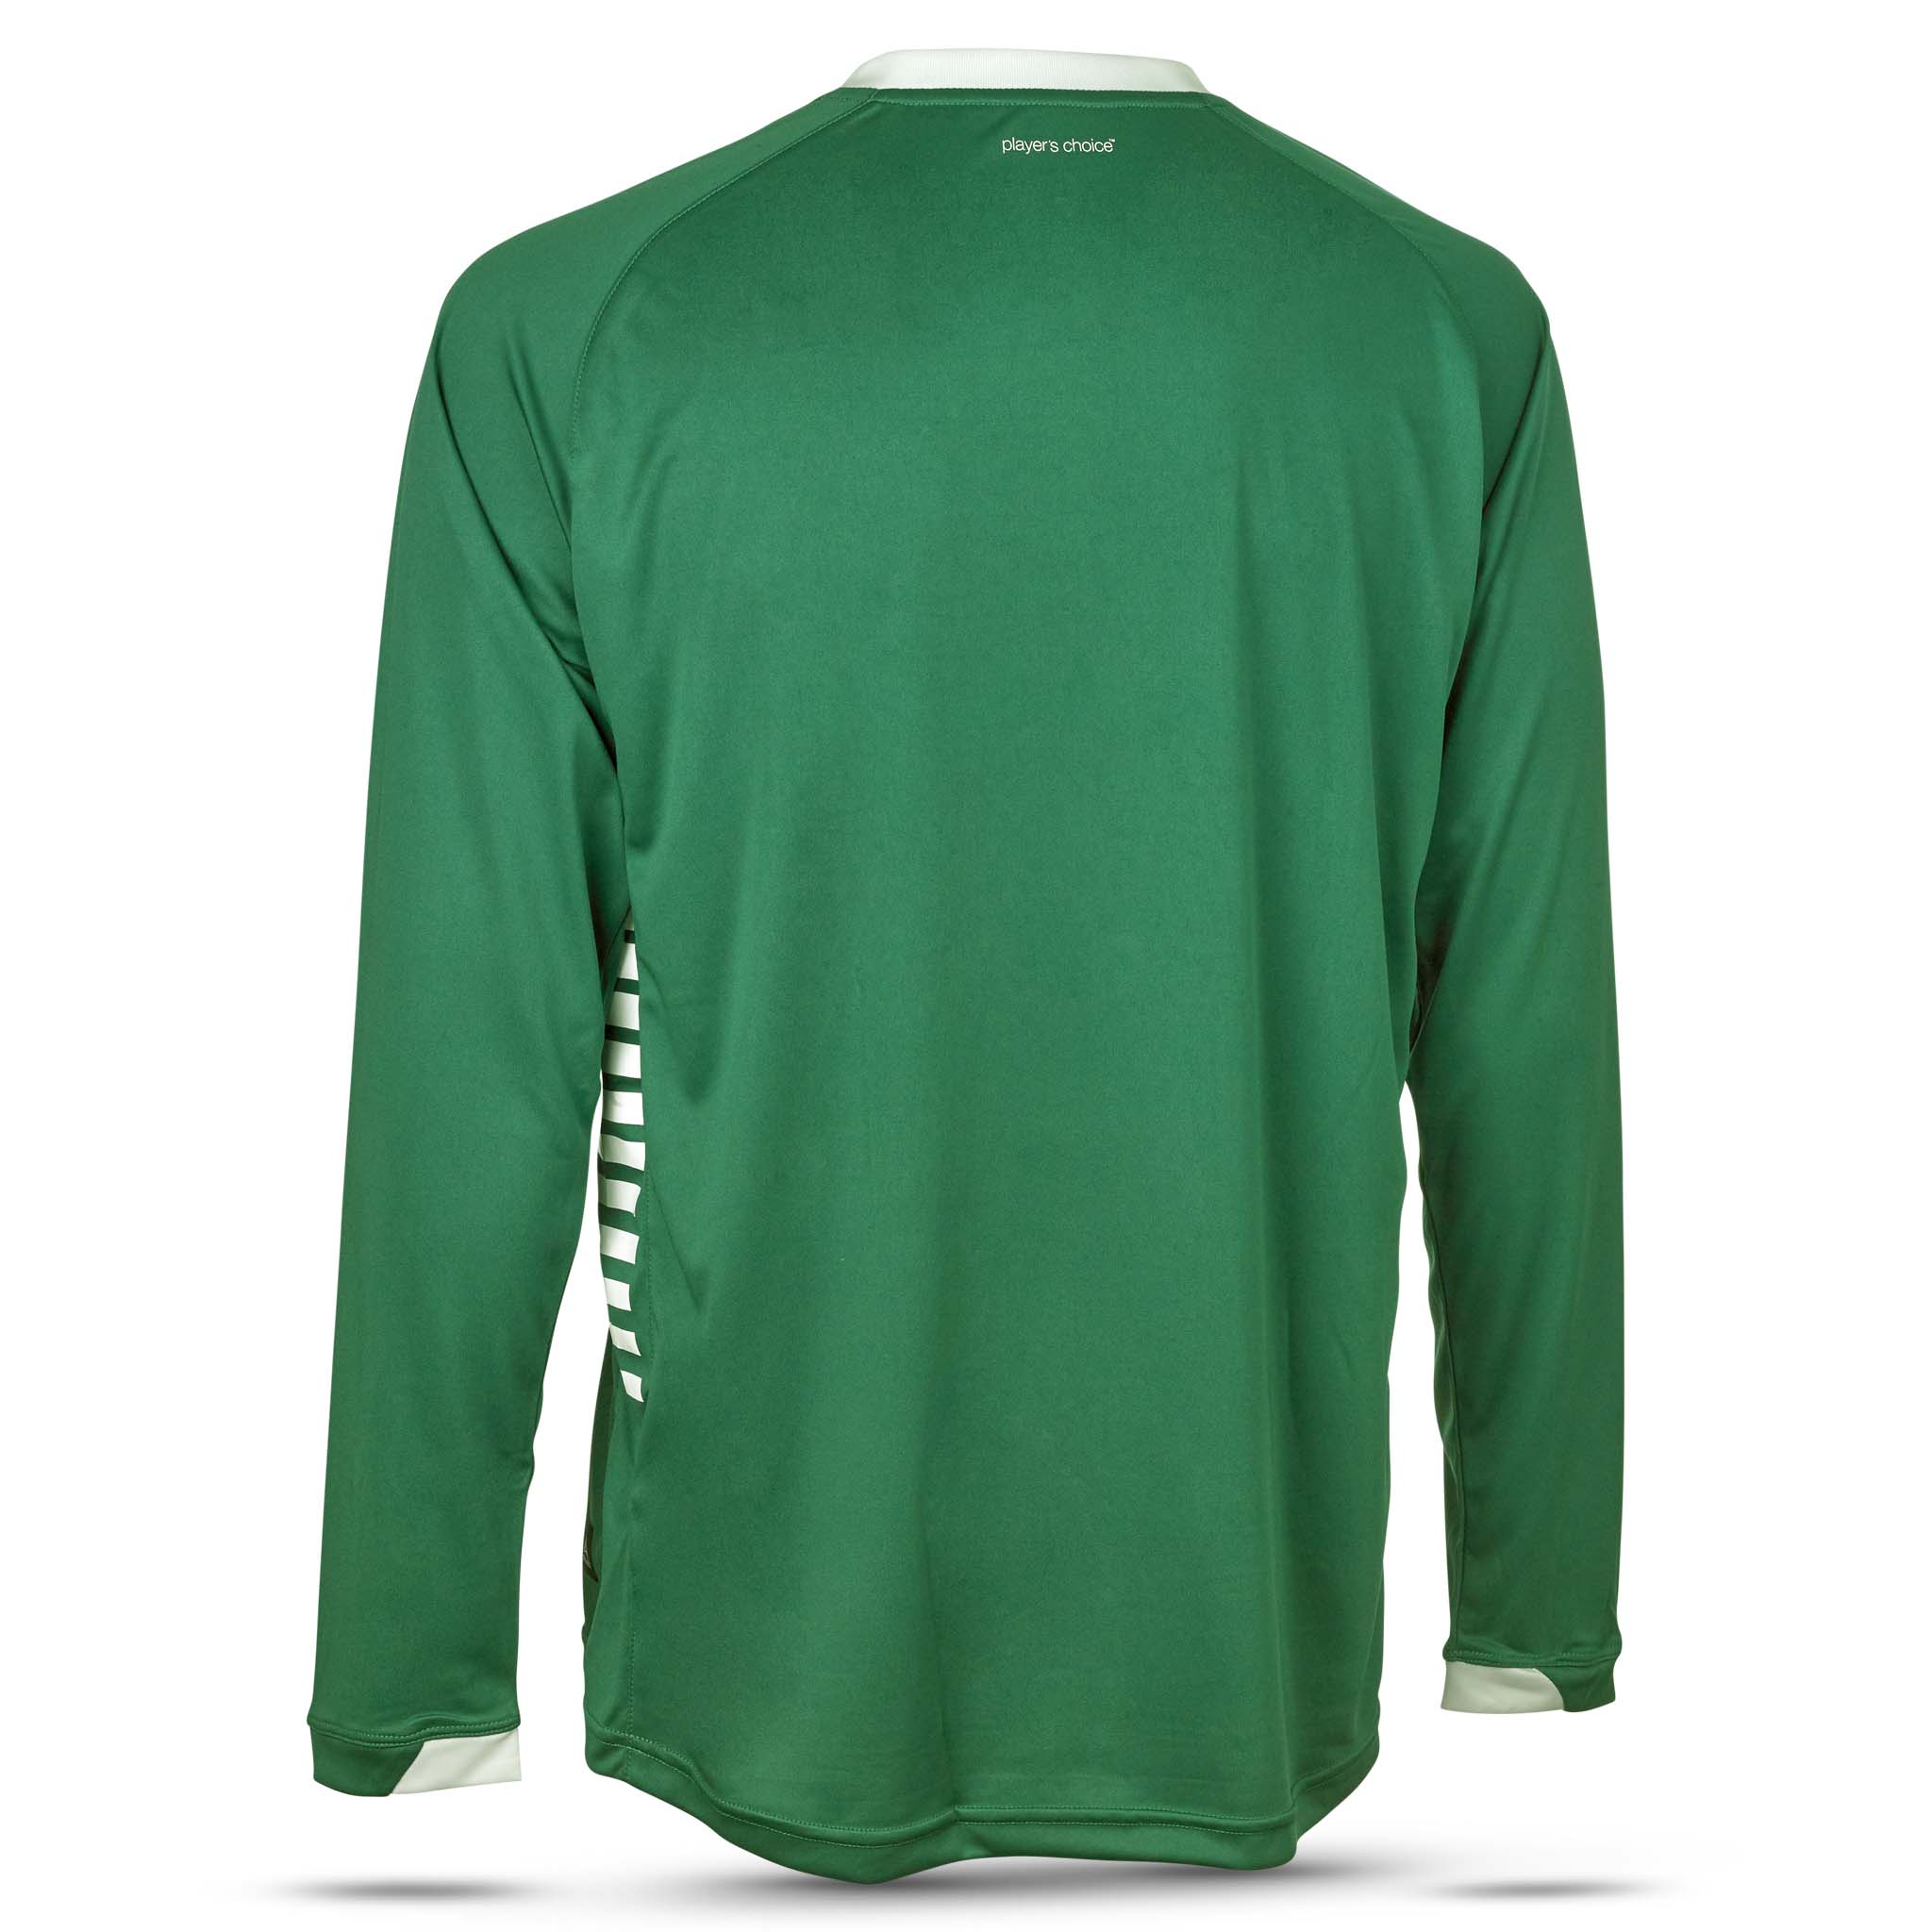 Spain Langærmet spillertrøje #farve_grøn